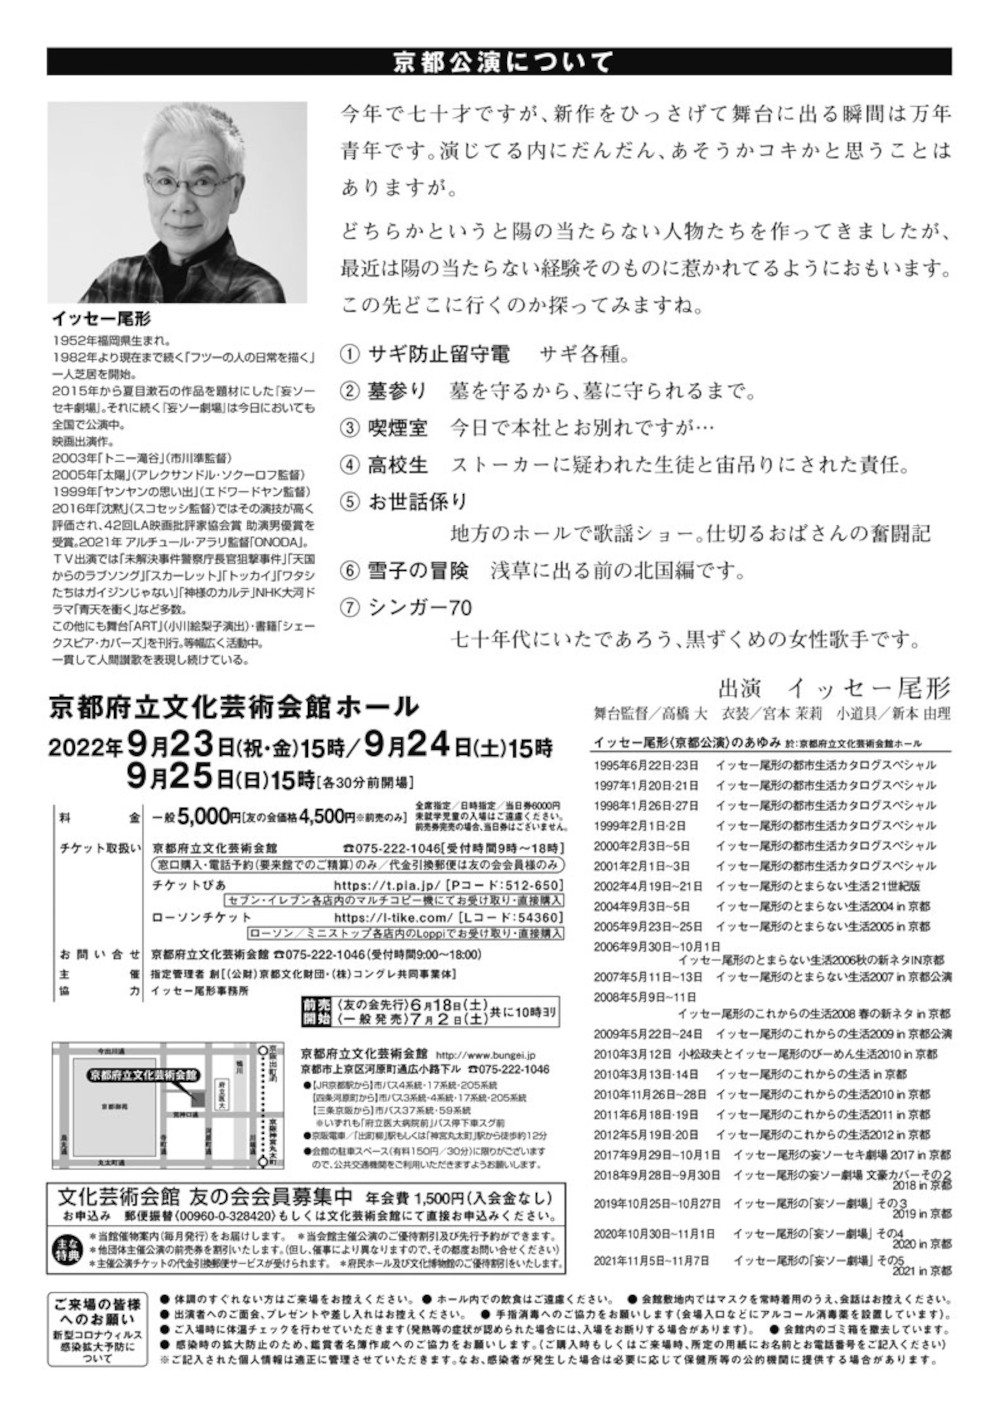 イッセー尾形の一人芝居「妄ソー劇場」 その6 2022 in 京都